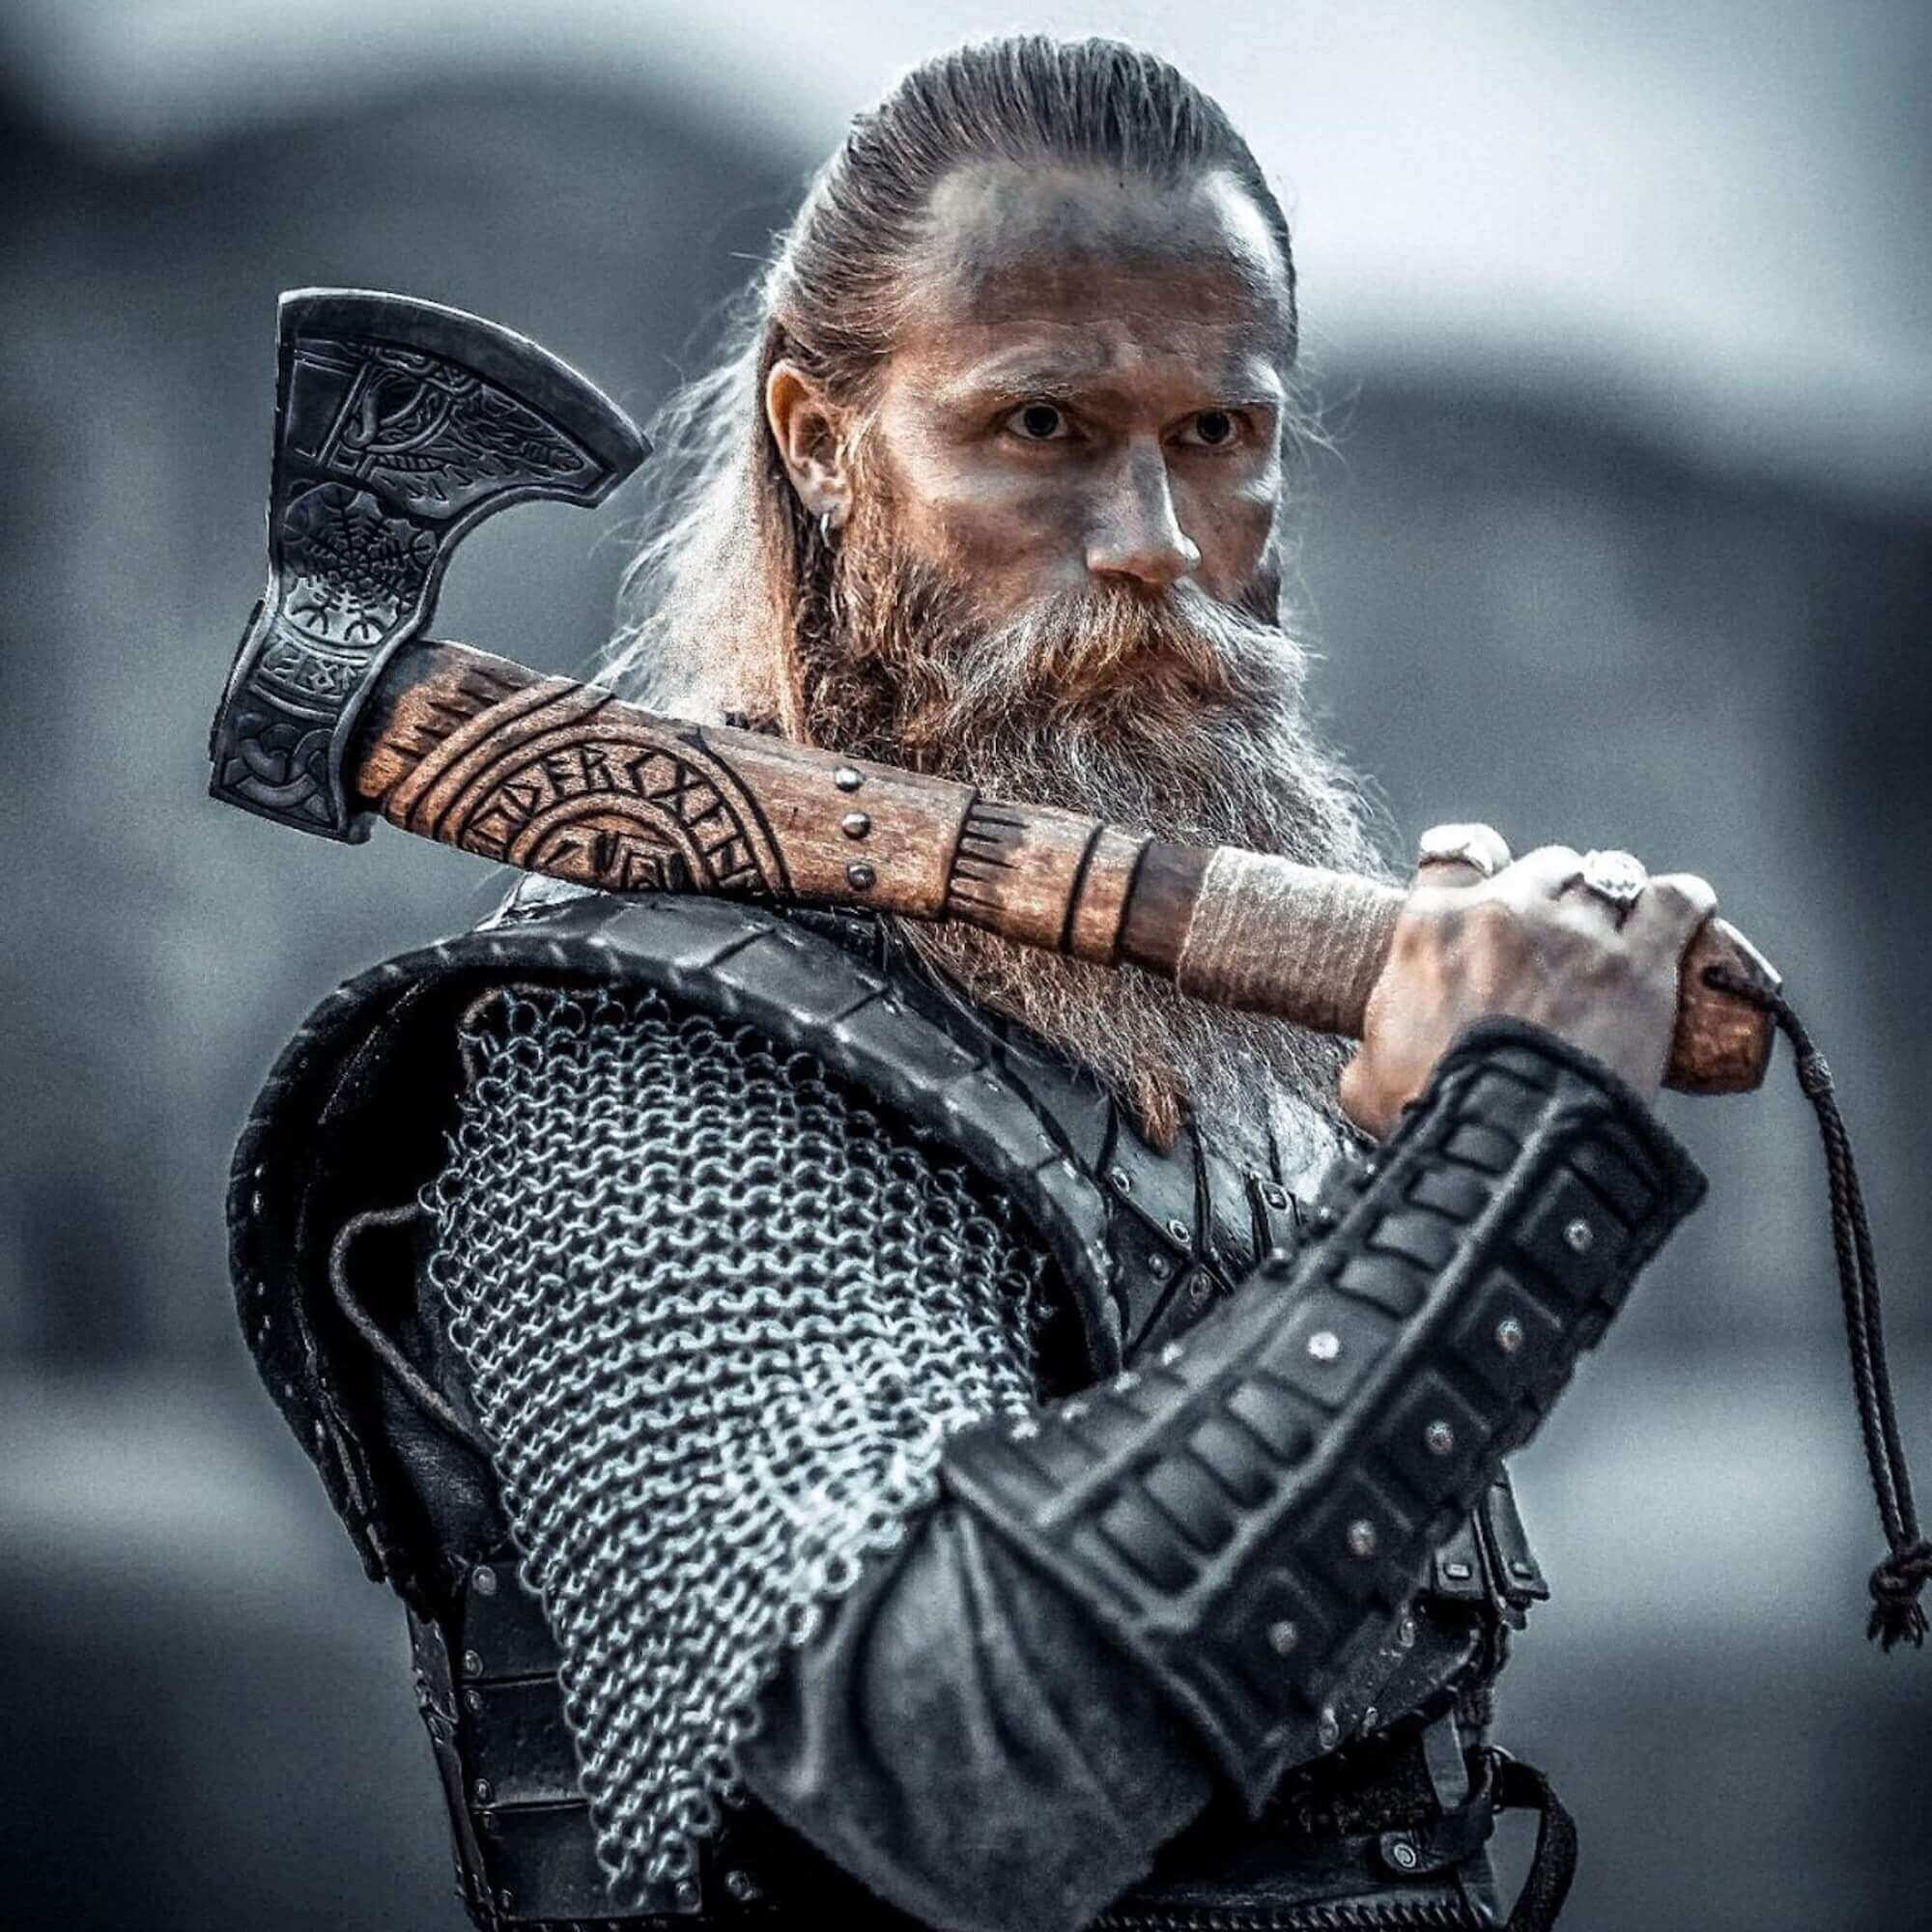 Viking Butcher Knife - Odin's Treasures